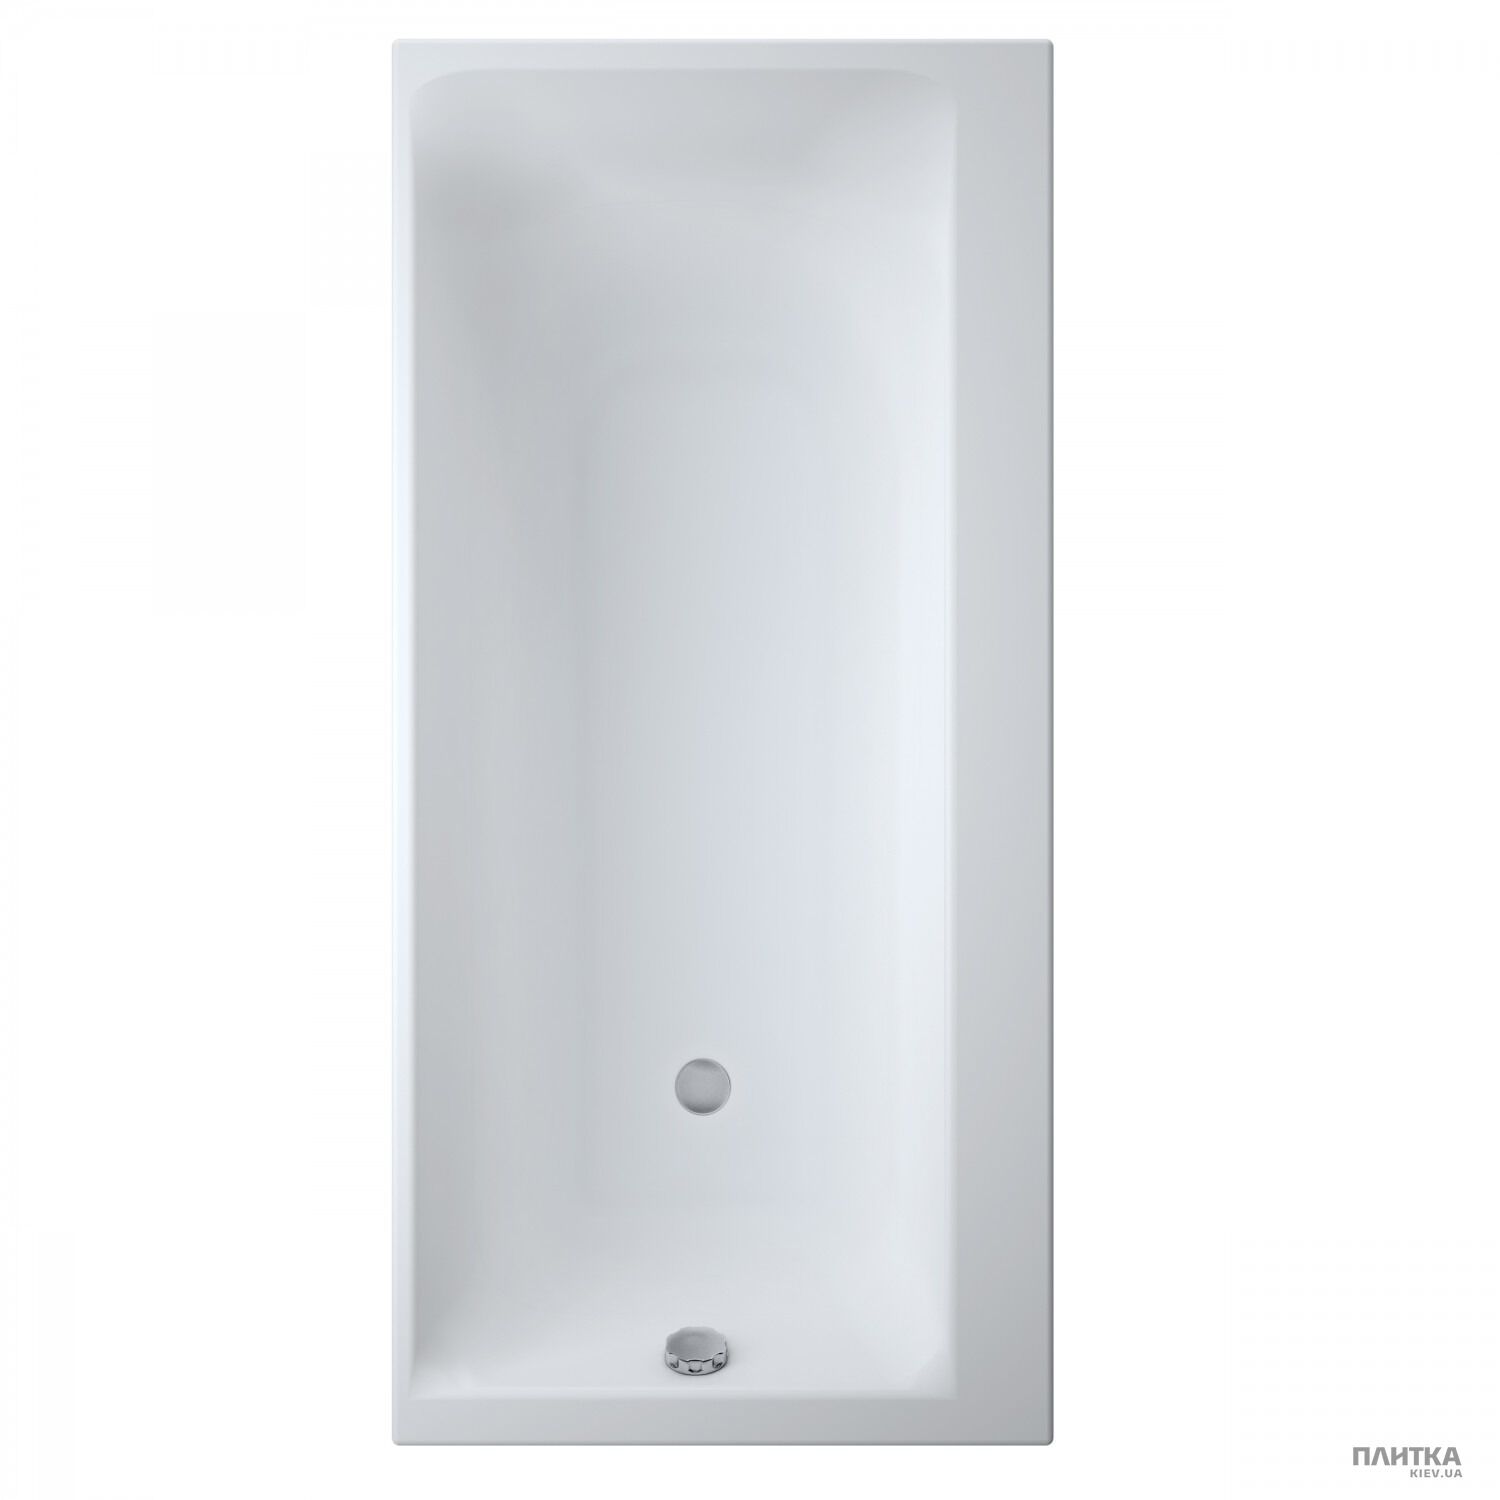 Акриловая ванна Cersanit Smart 170x80 см правая белый